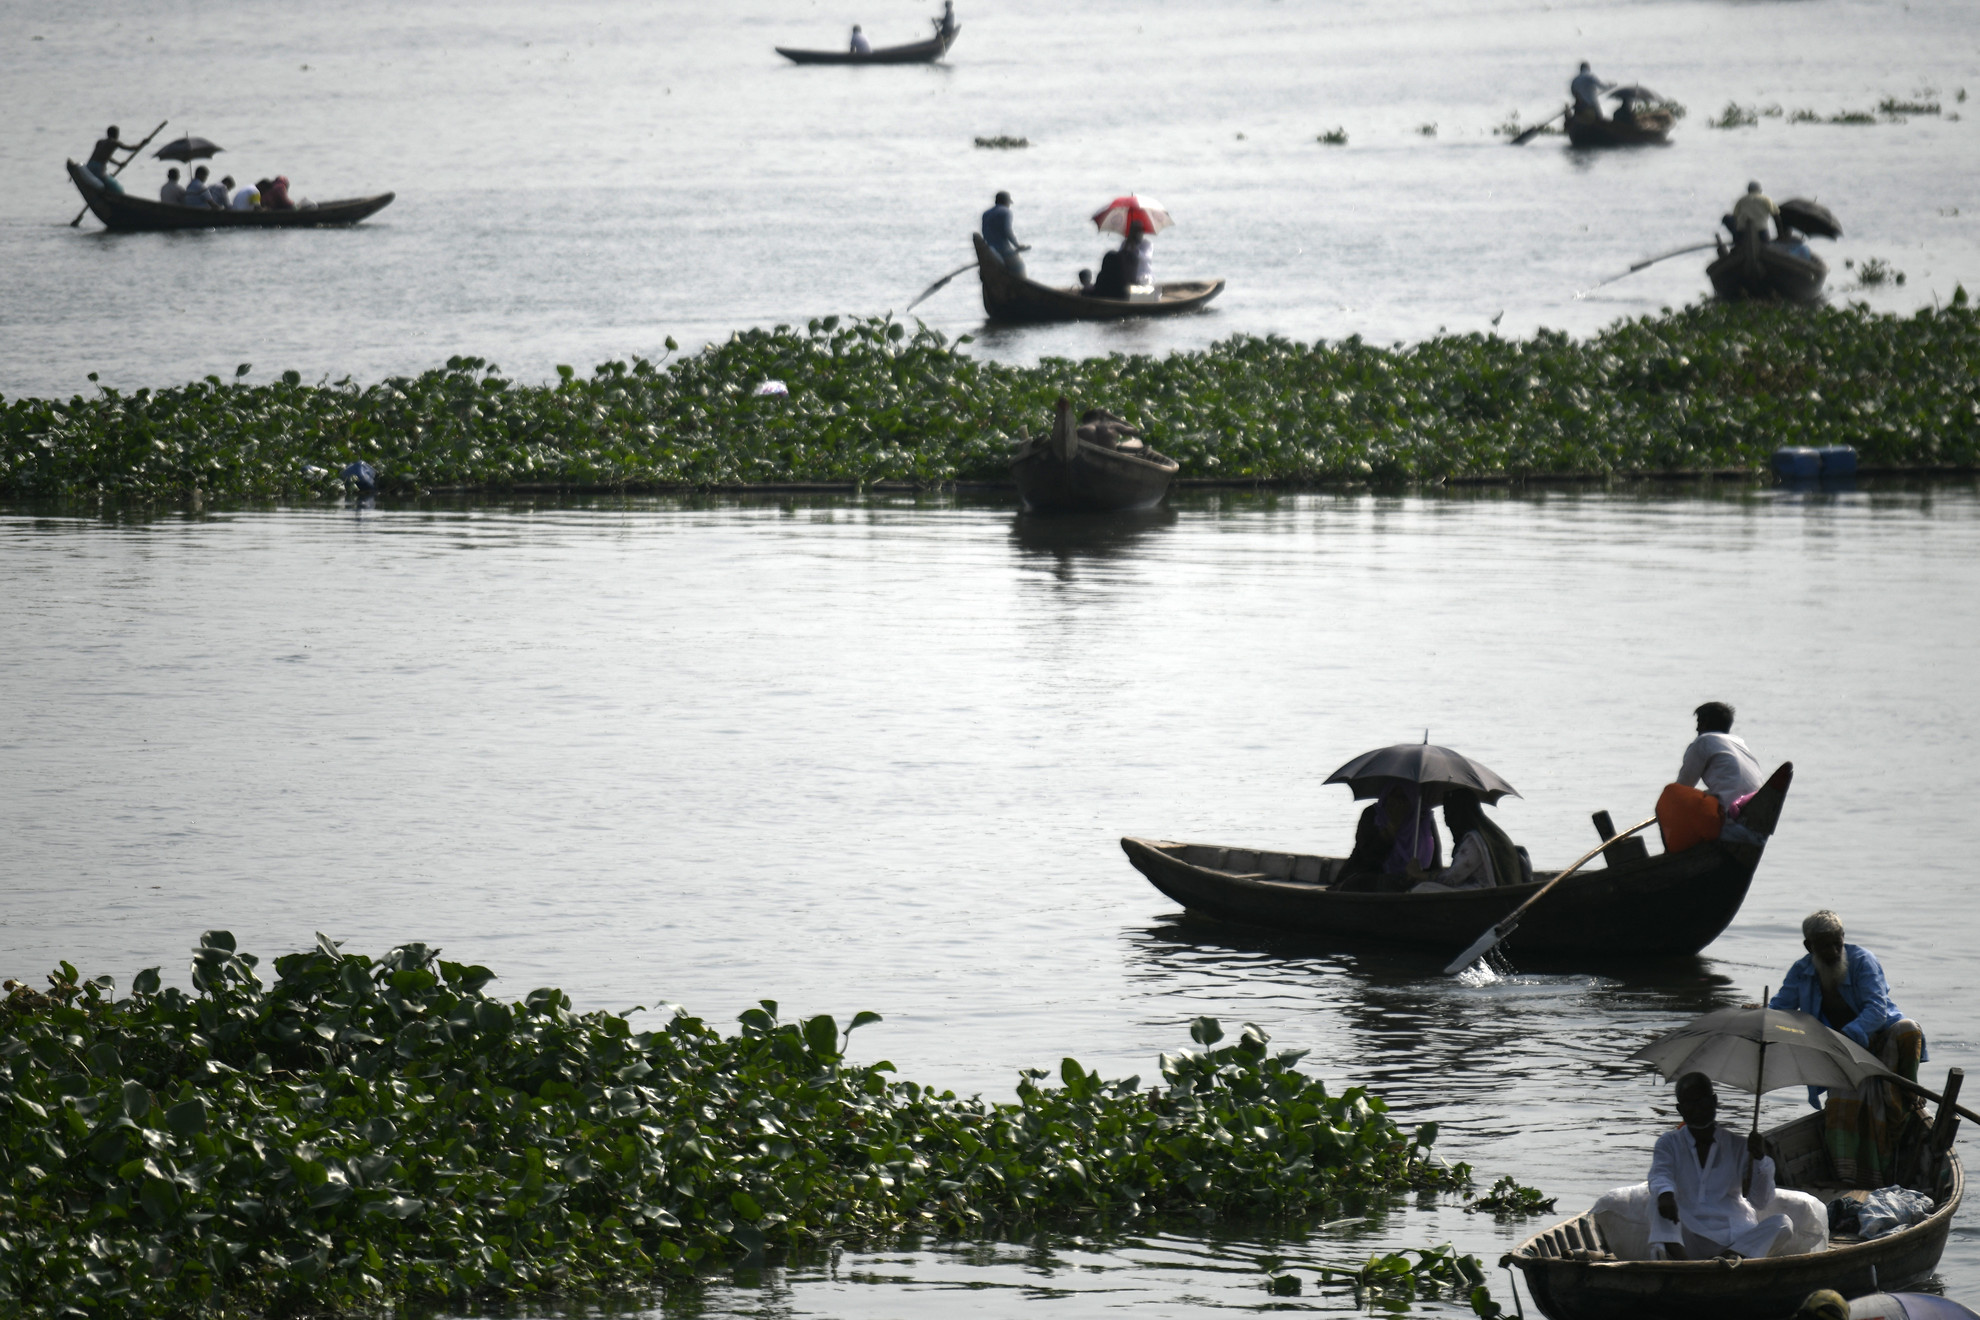 Utasok kelnek át a Buriganga folyón, miközben ernyőt tartanak, hogy megóvják magukat a forró napsütéstől a bangladesi Dakkában, 2023. május 06-án. Az uralkodó mérsékelt, hőhullámos állapot a bangladesi meteorológiai hivatal (BMD) szerint valószínűleg a következő napokban is folytatódik az országban.